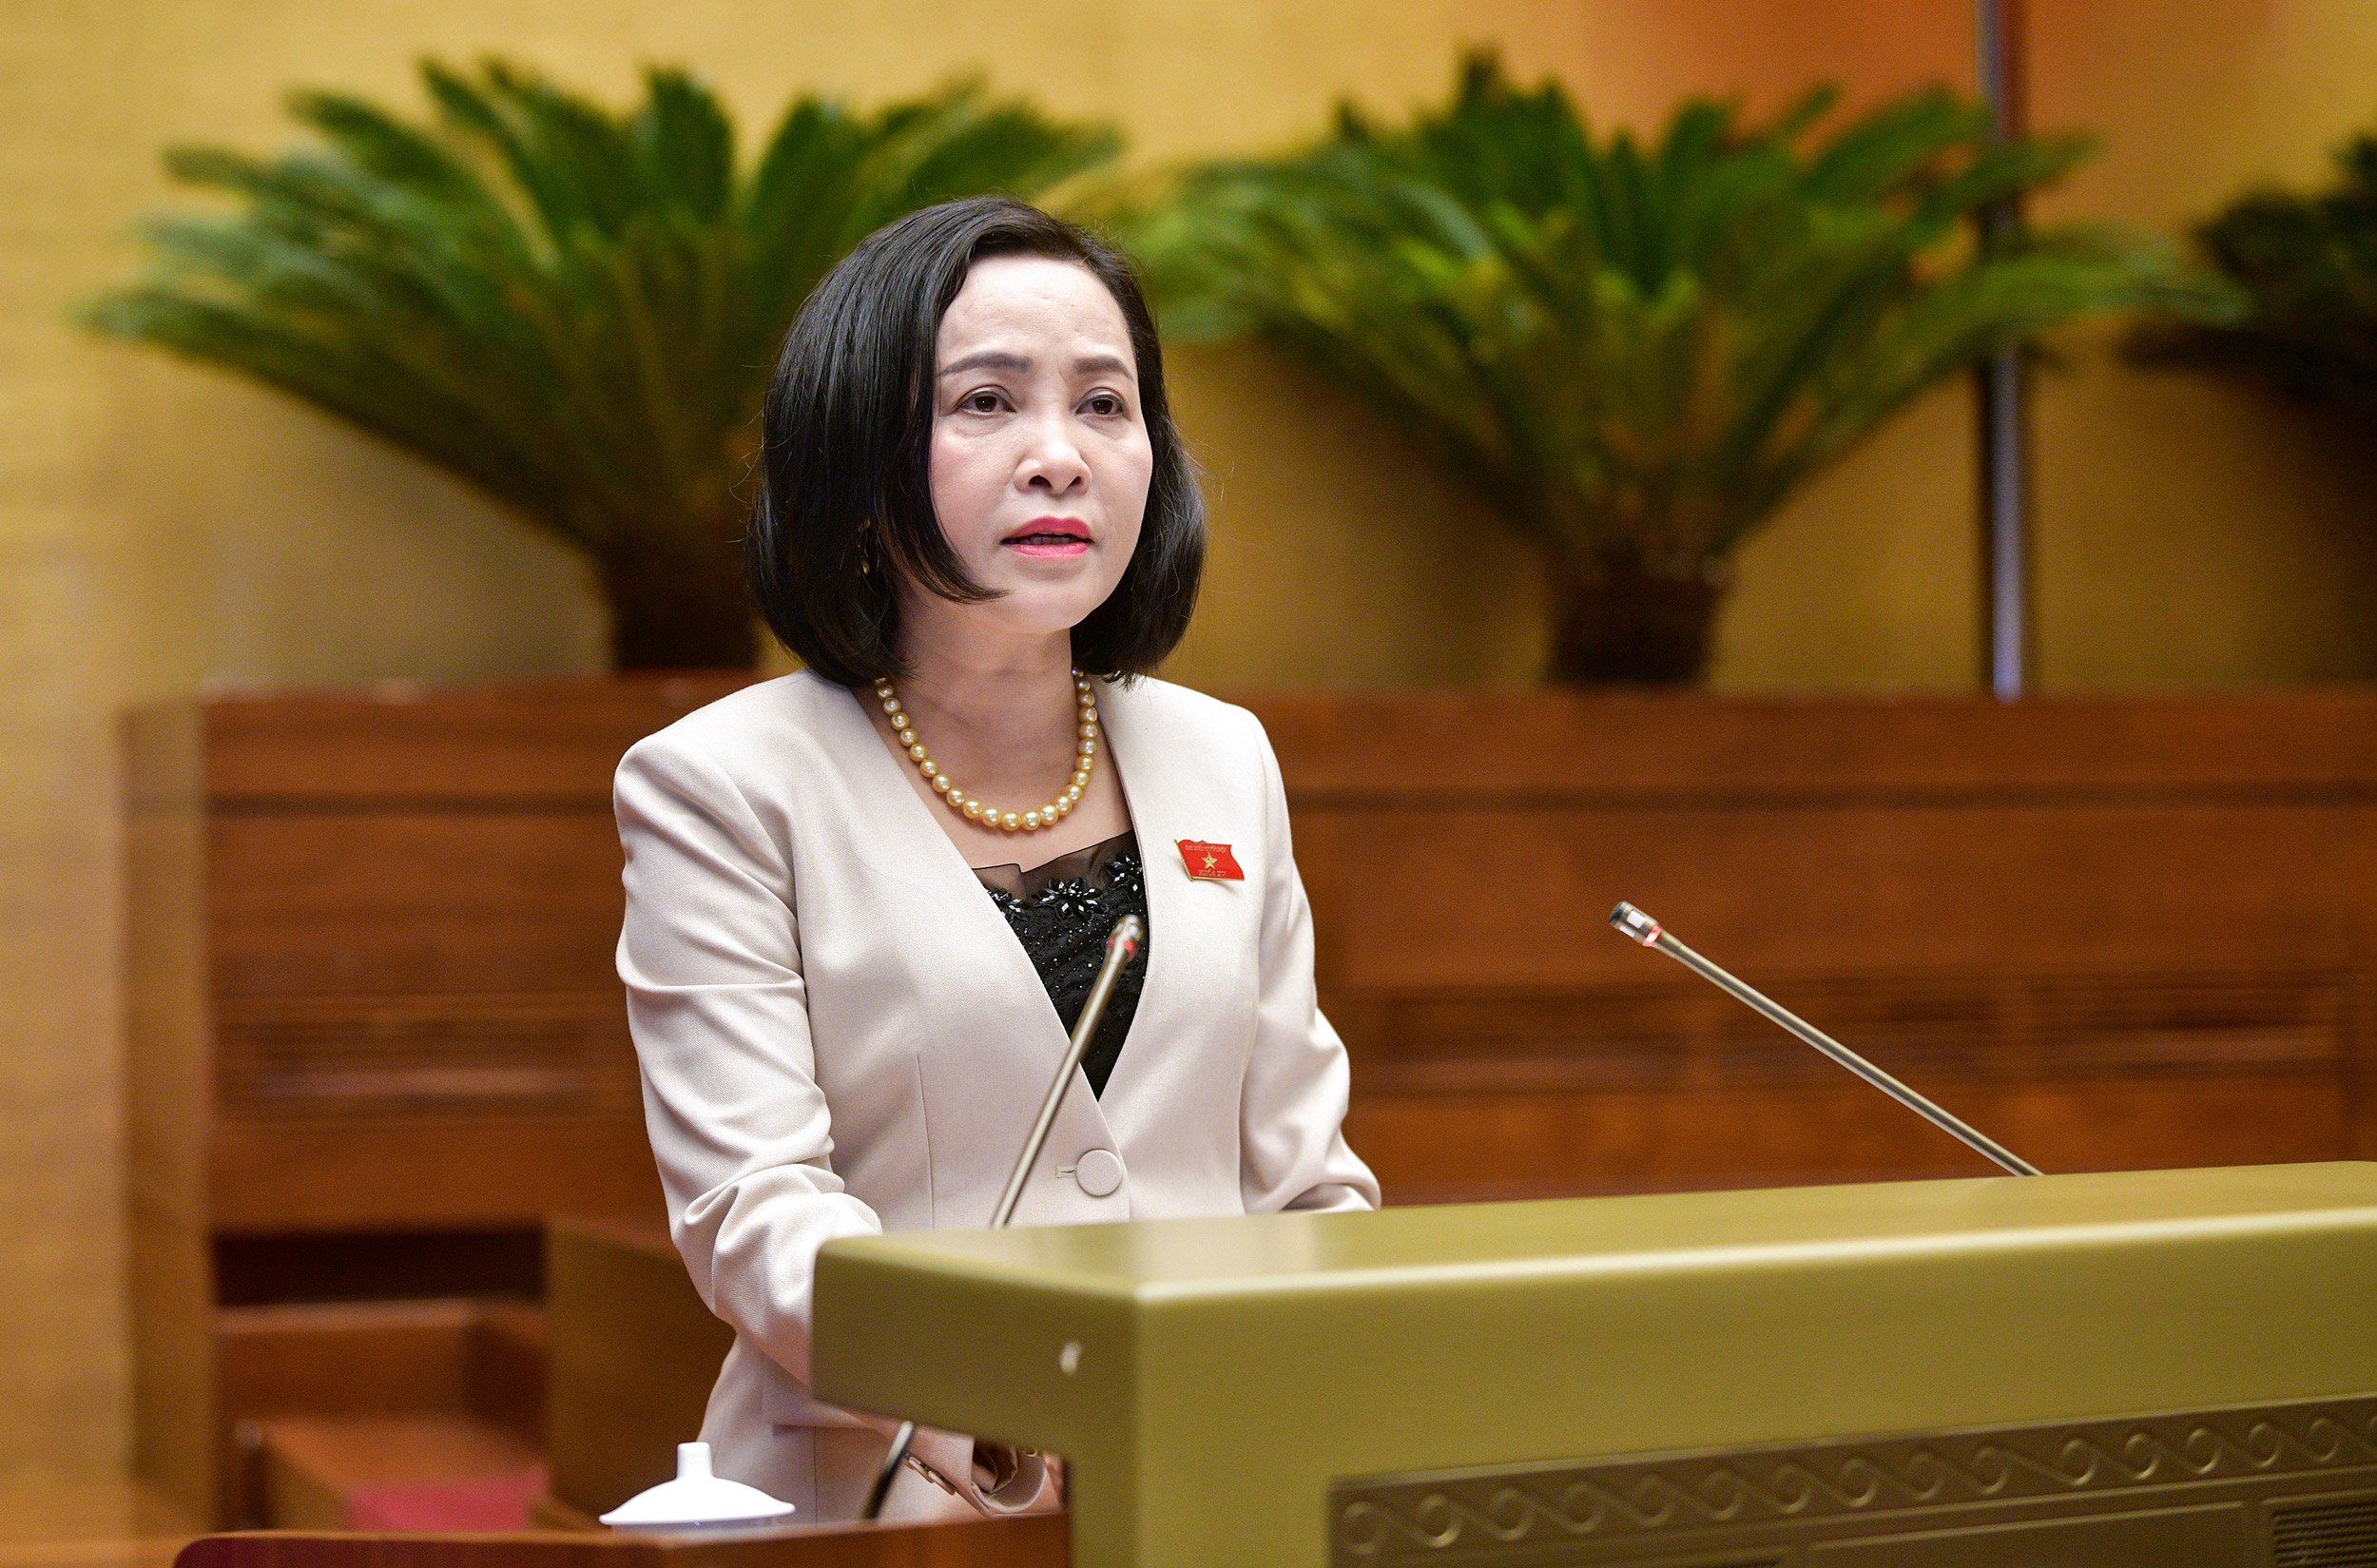 Trưởng ban Công tác đại biểu Nguyễn Thị Thanh báo cáo tại hội nghị.